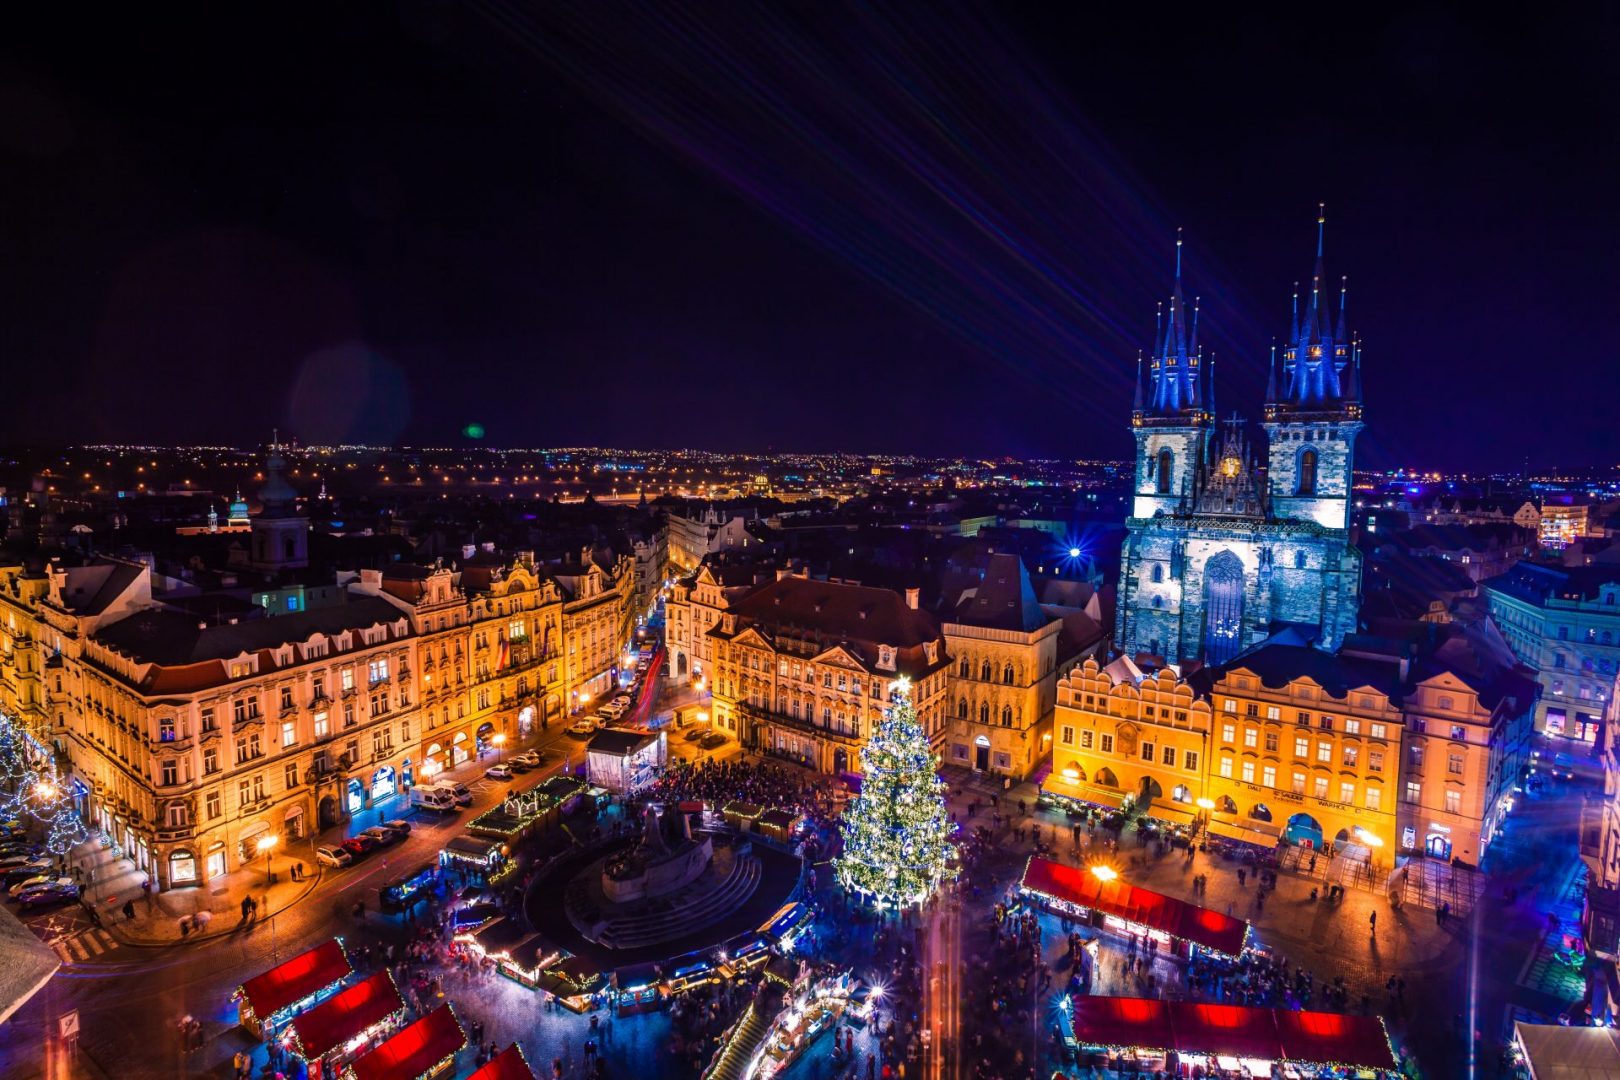 Approfitta del periodo natalizio per visitare Praga e iniziare il trattamento di fecondazione assistita